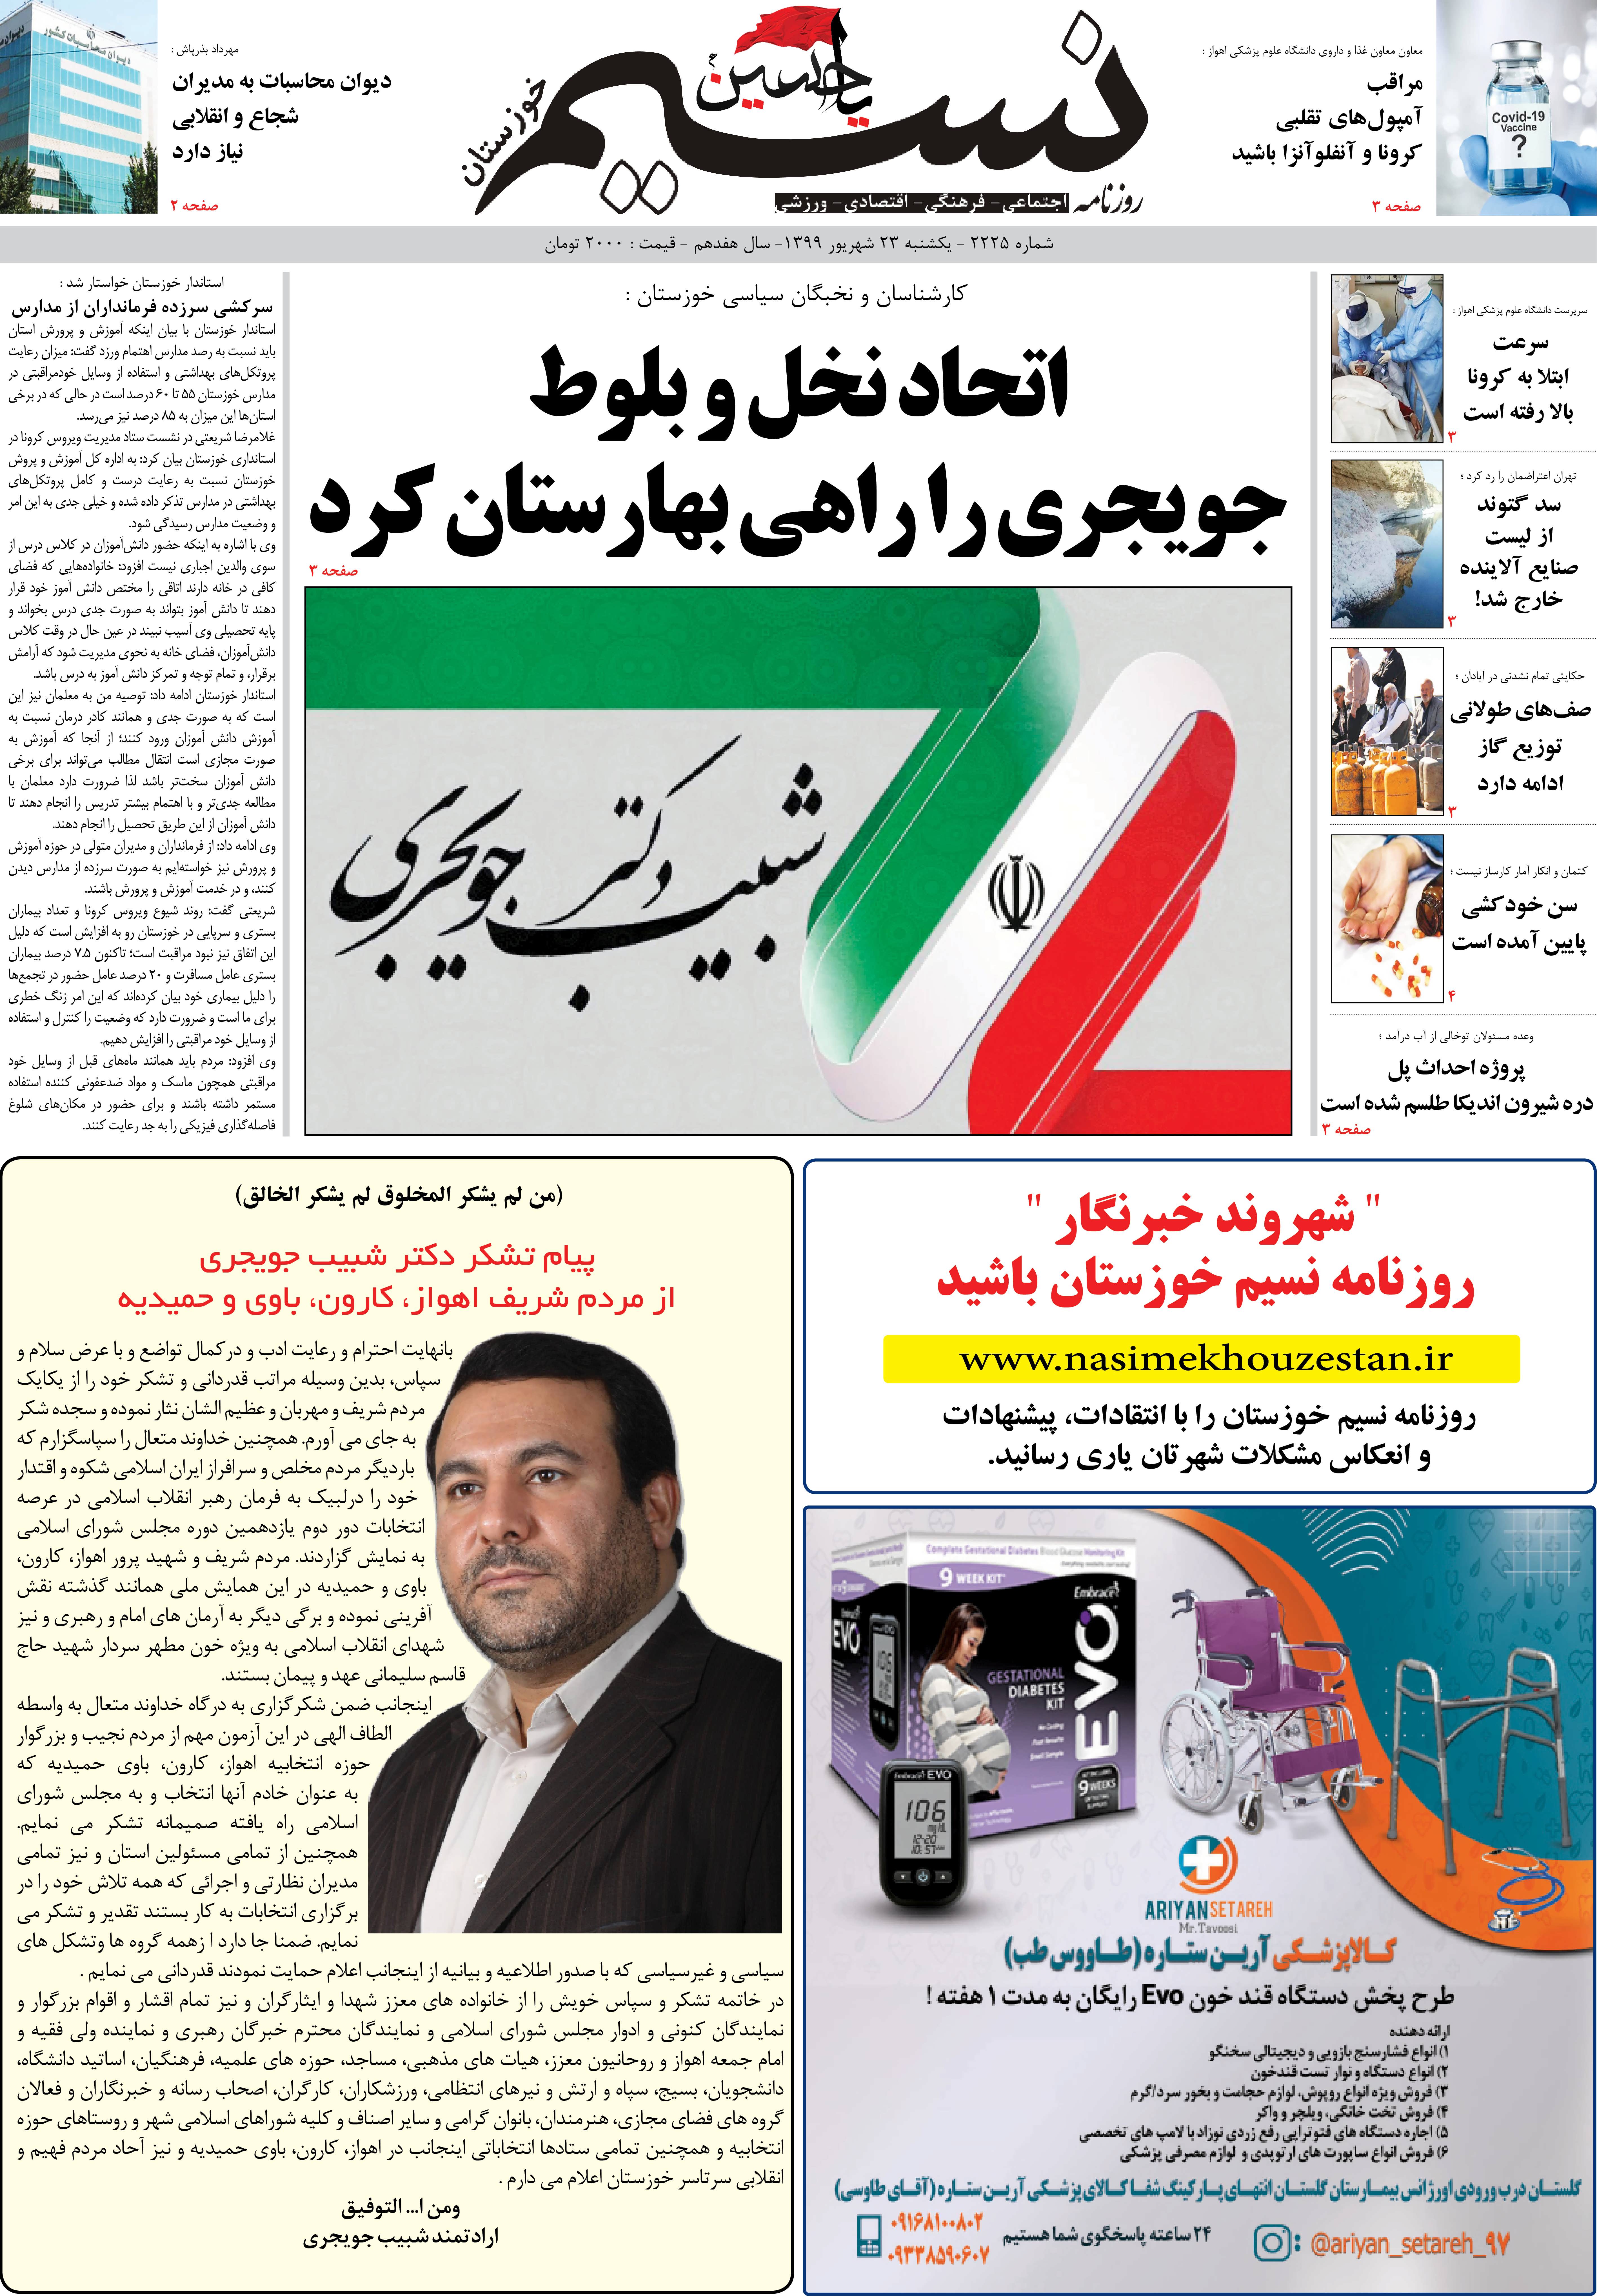 صفحه اصلی روزنامه نسیم شماره 2225 